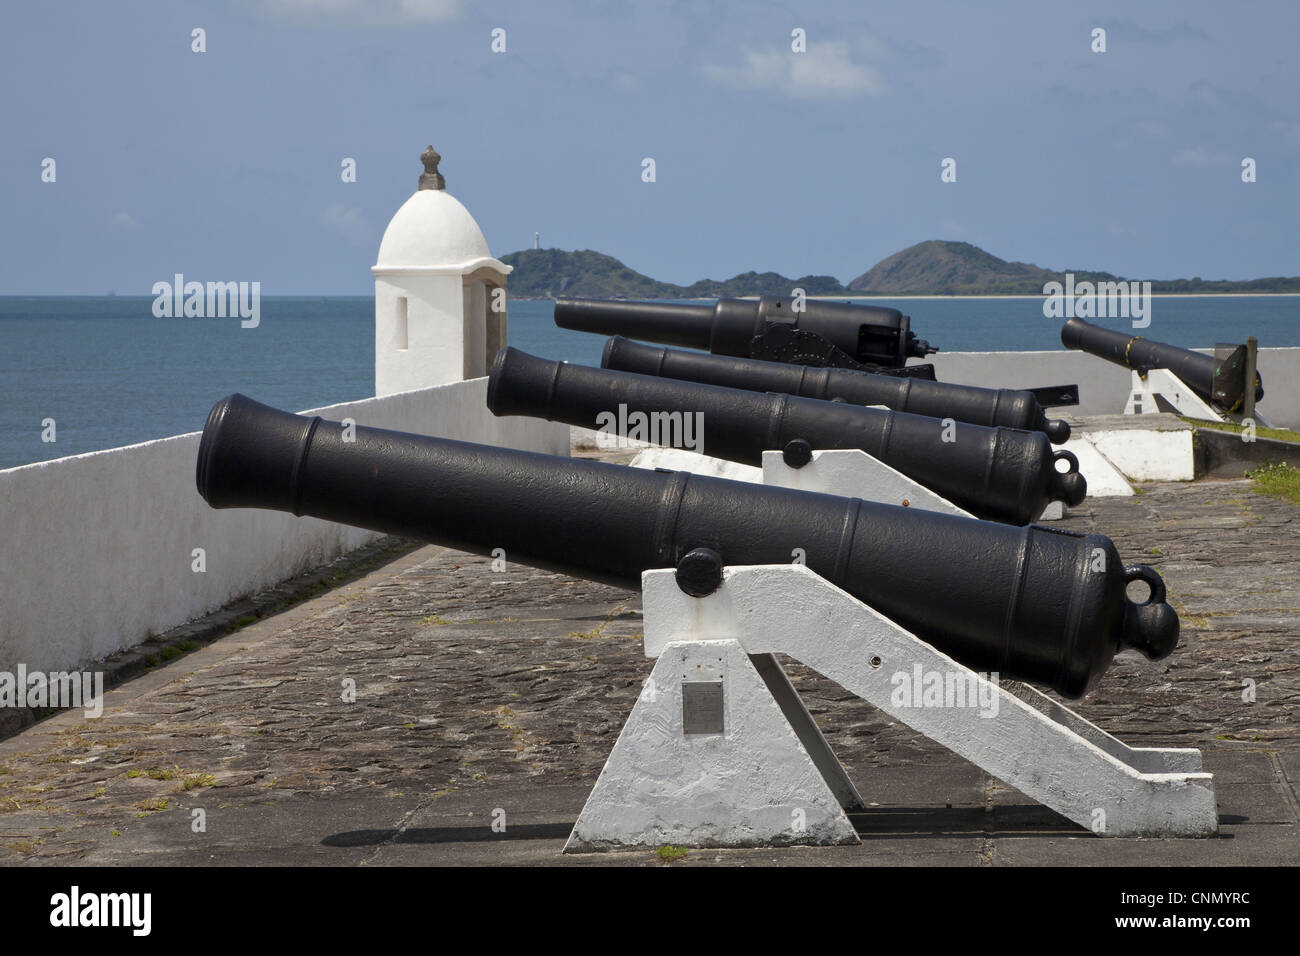 Cannons on historic coastal fortress, Ilha do Mel, Parana, Brazil Stock Photo